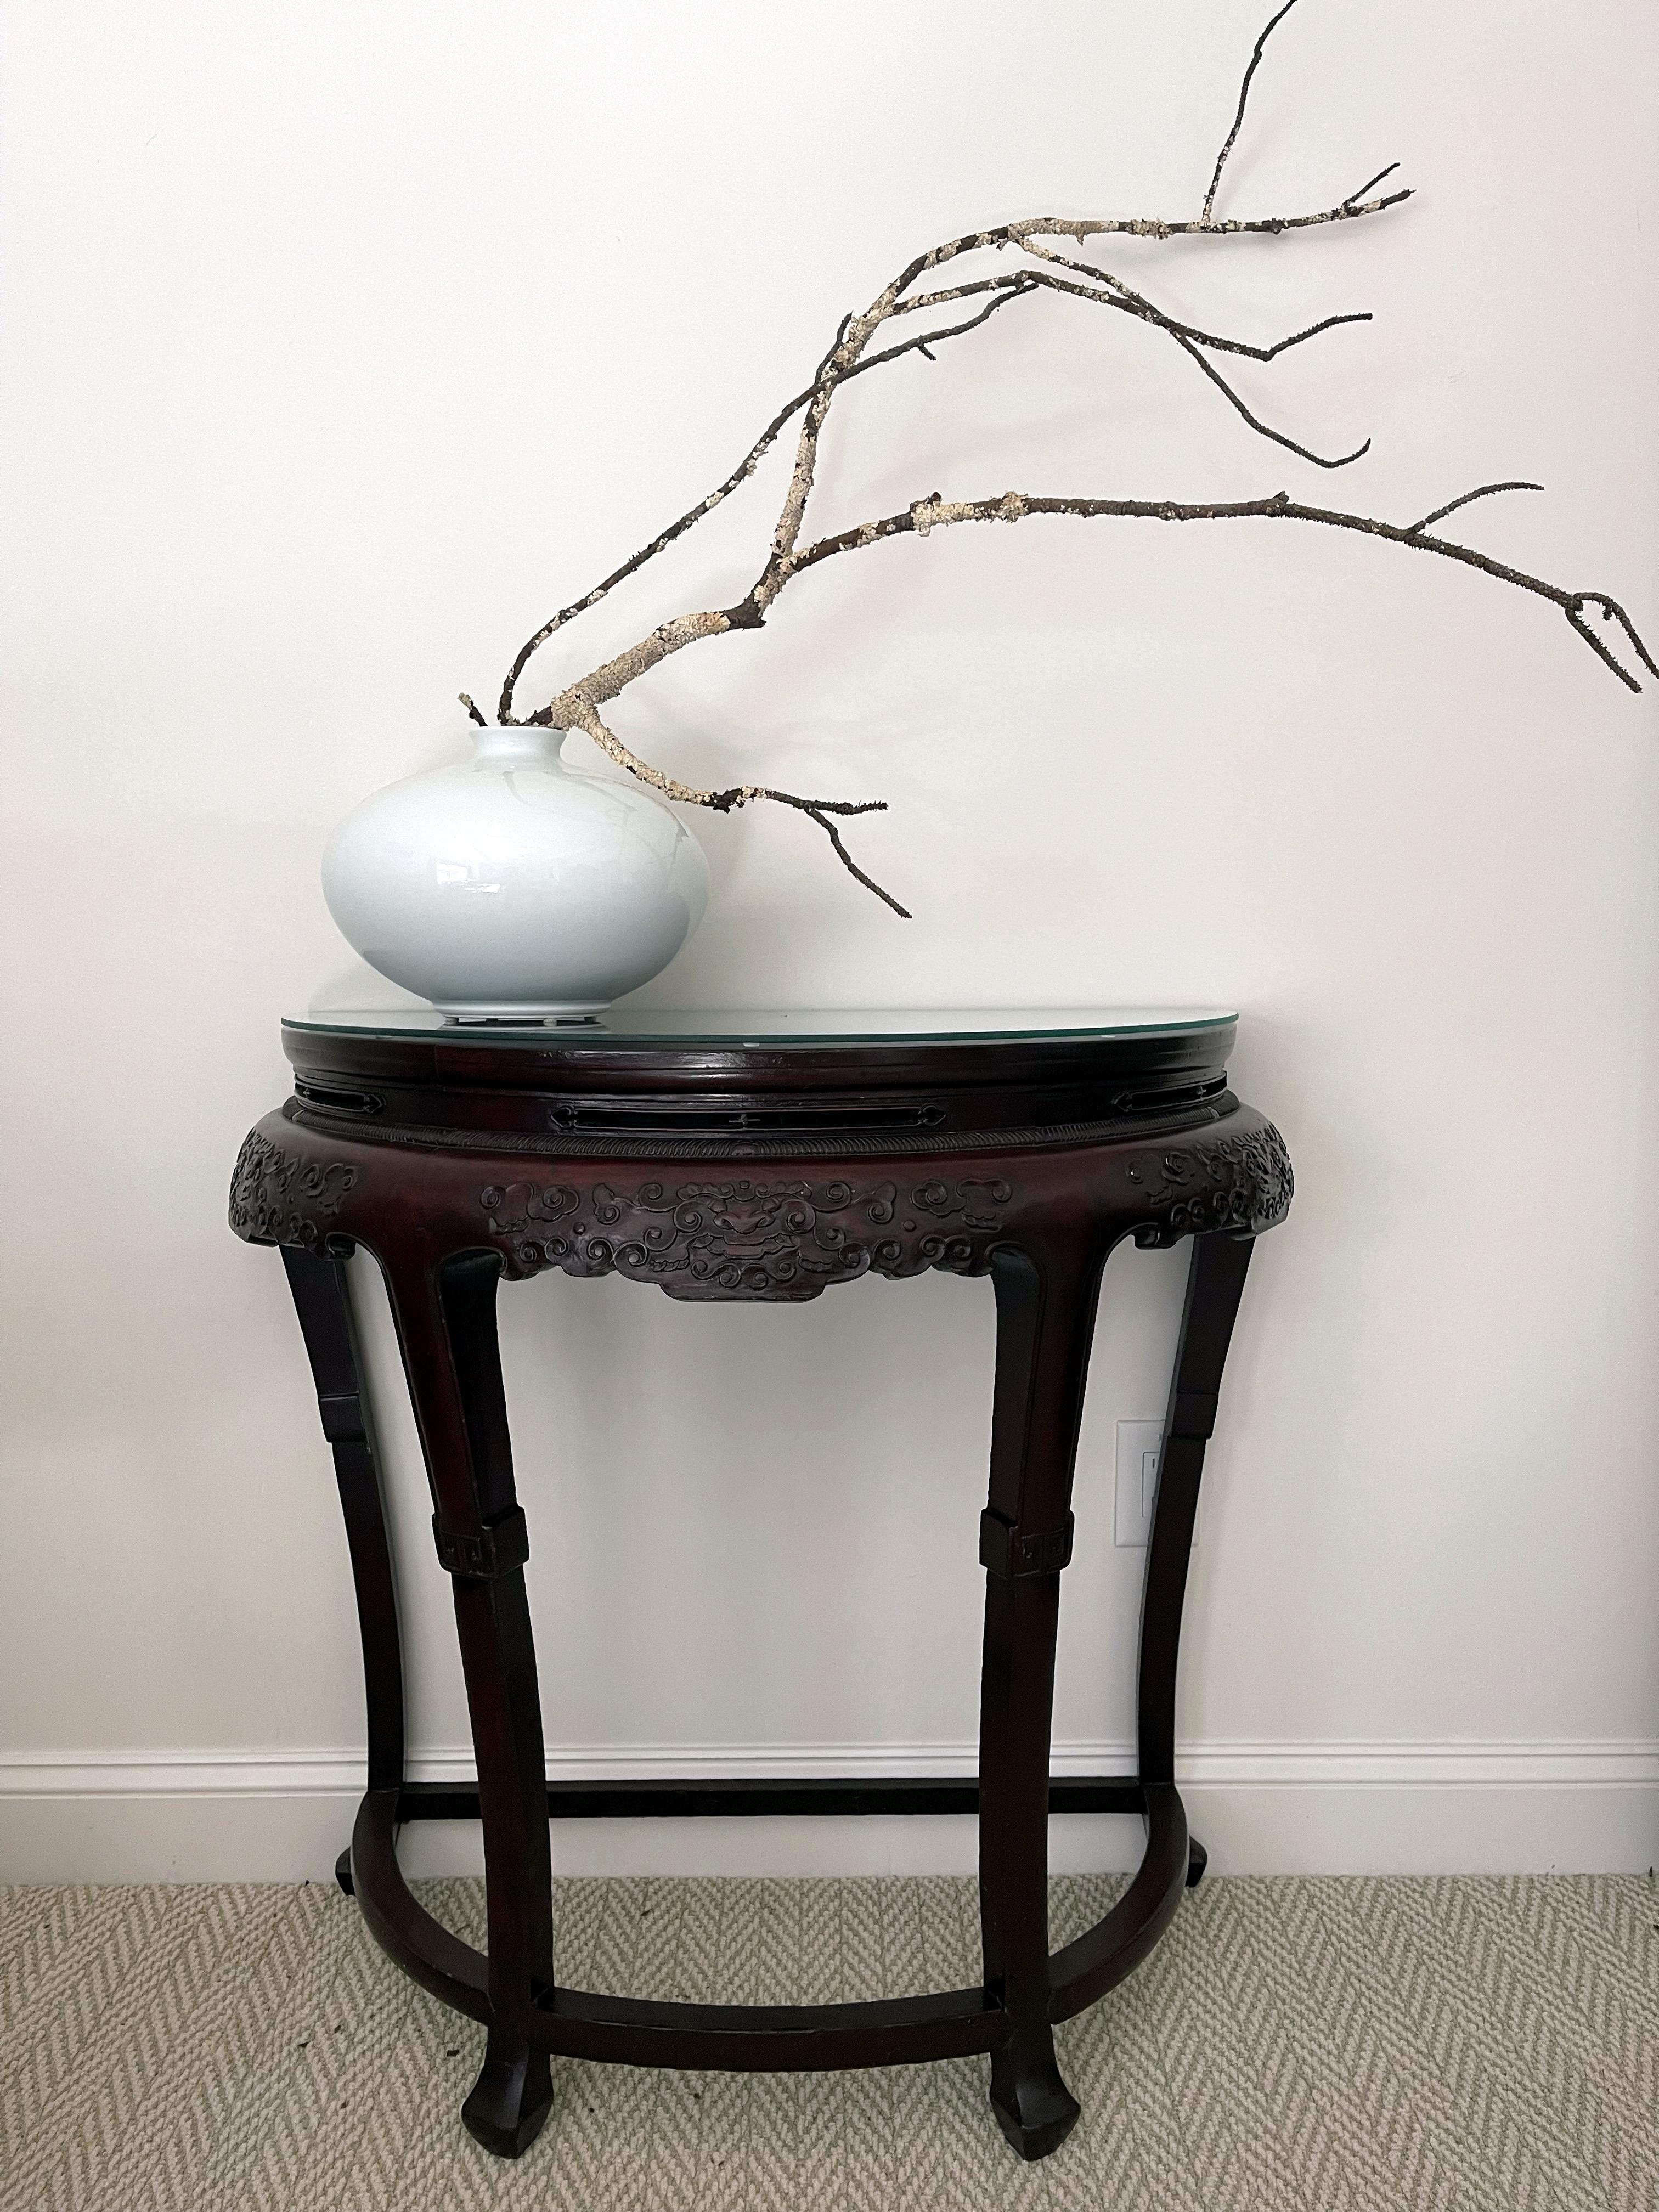 Ein chinesischer Demi-Lune-Konsolentisch aus der zweiten Hälfte des 19. Jahrhunderts (späte Qing-Dynastie; 1644-1912). Der D-förmige Tisch, der immer paarweise hergestellt wird, wurde so genannt, weil er einem Halbmond ähnelt, und wenn die beiden